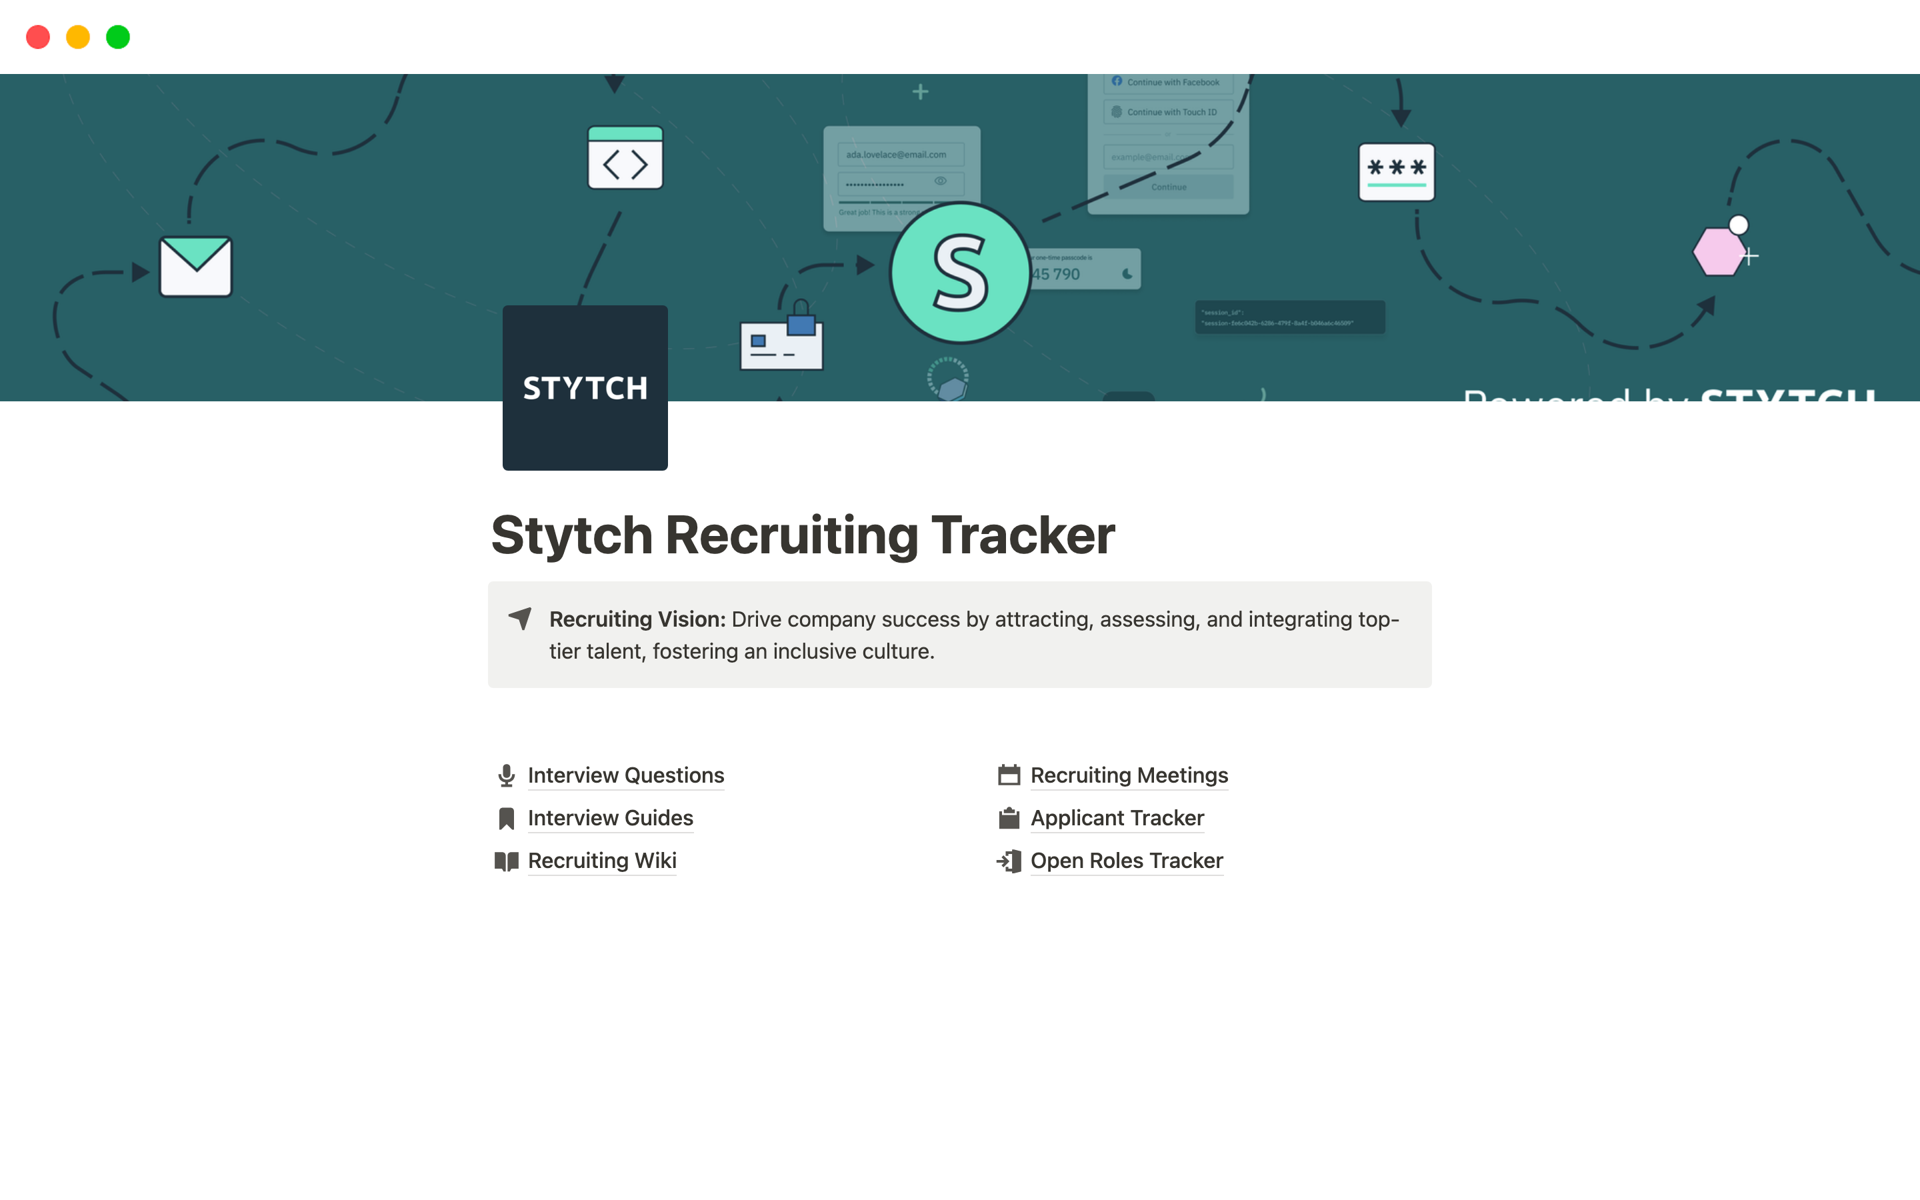 Le modèle de suivi du recrutement par Stytch sur Notion offre une approche ciblée de l’embauche pour les postes d’ingénieurs.